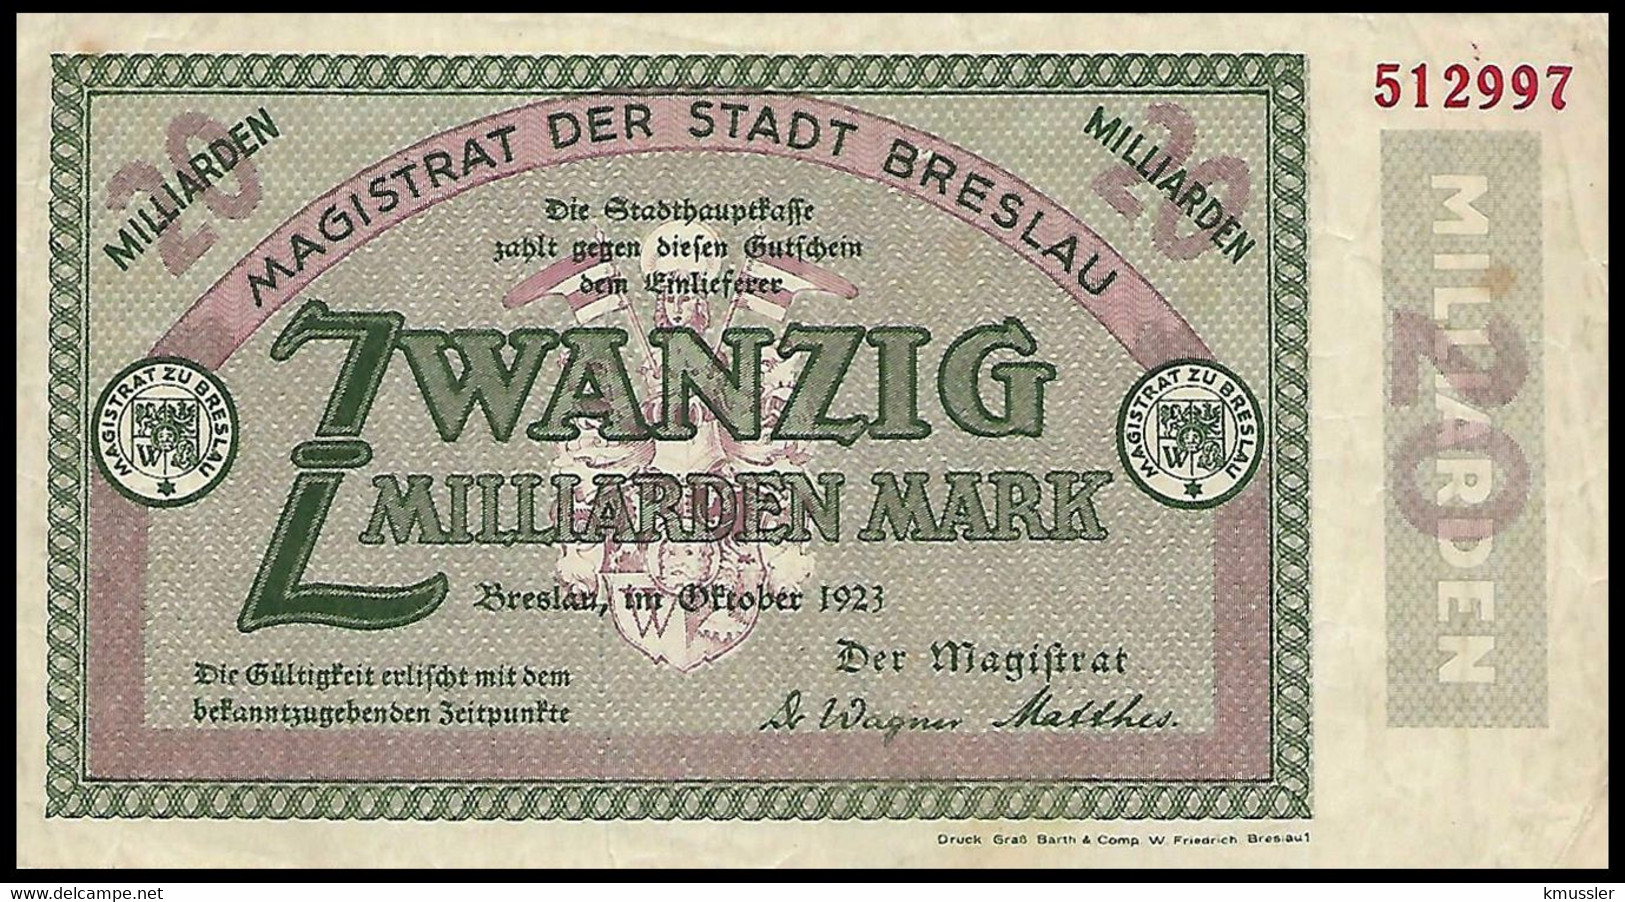 # # # Stadt Breslau (Germany) 20.000.000 Mark 1923 # # # - Unclassified